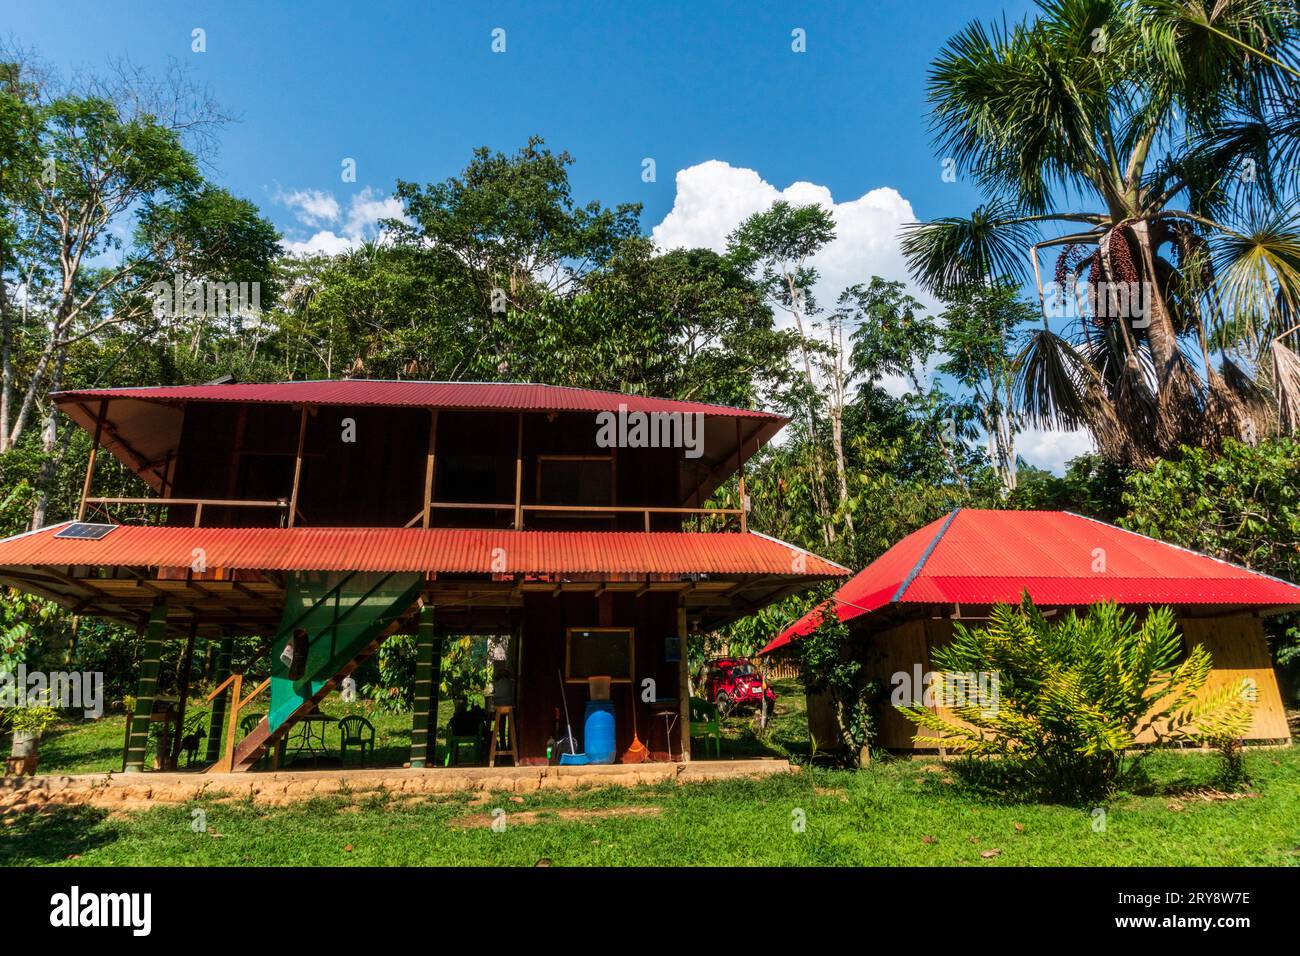 Eco-lodge in the amazon rainforest, peruvian jungle. Stock Photo